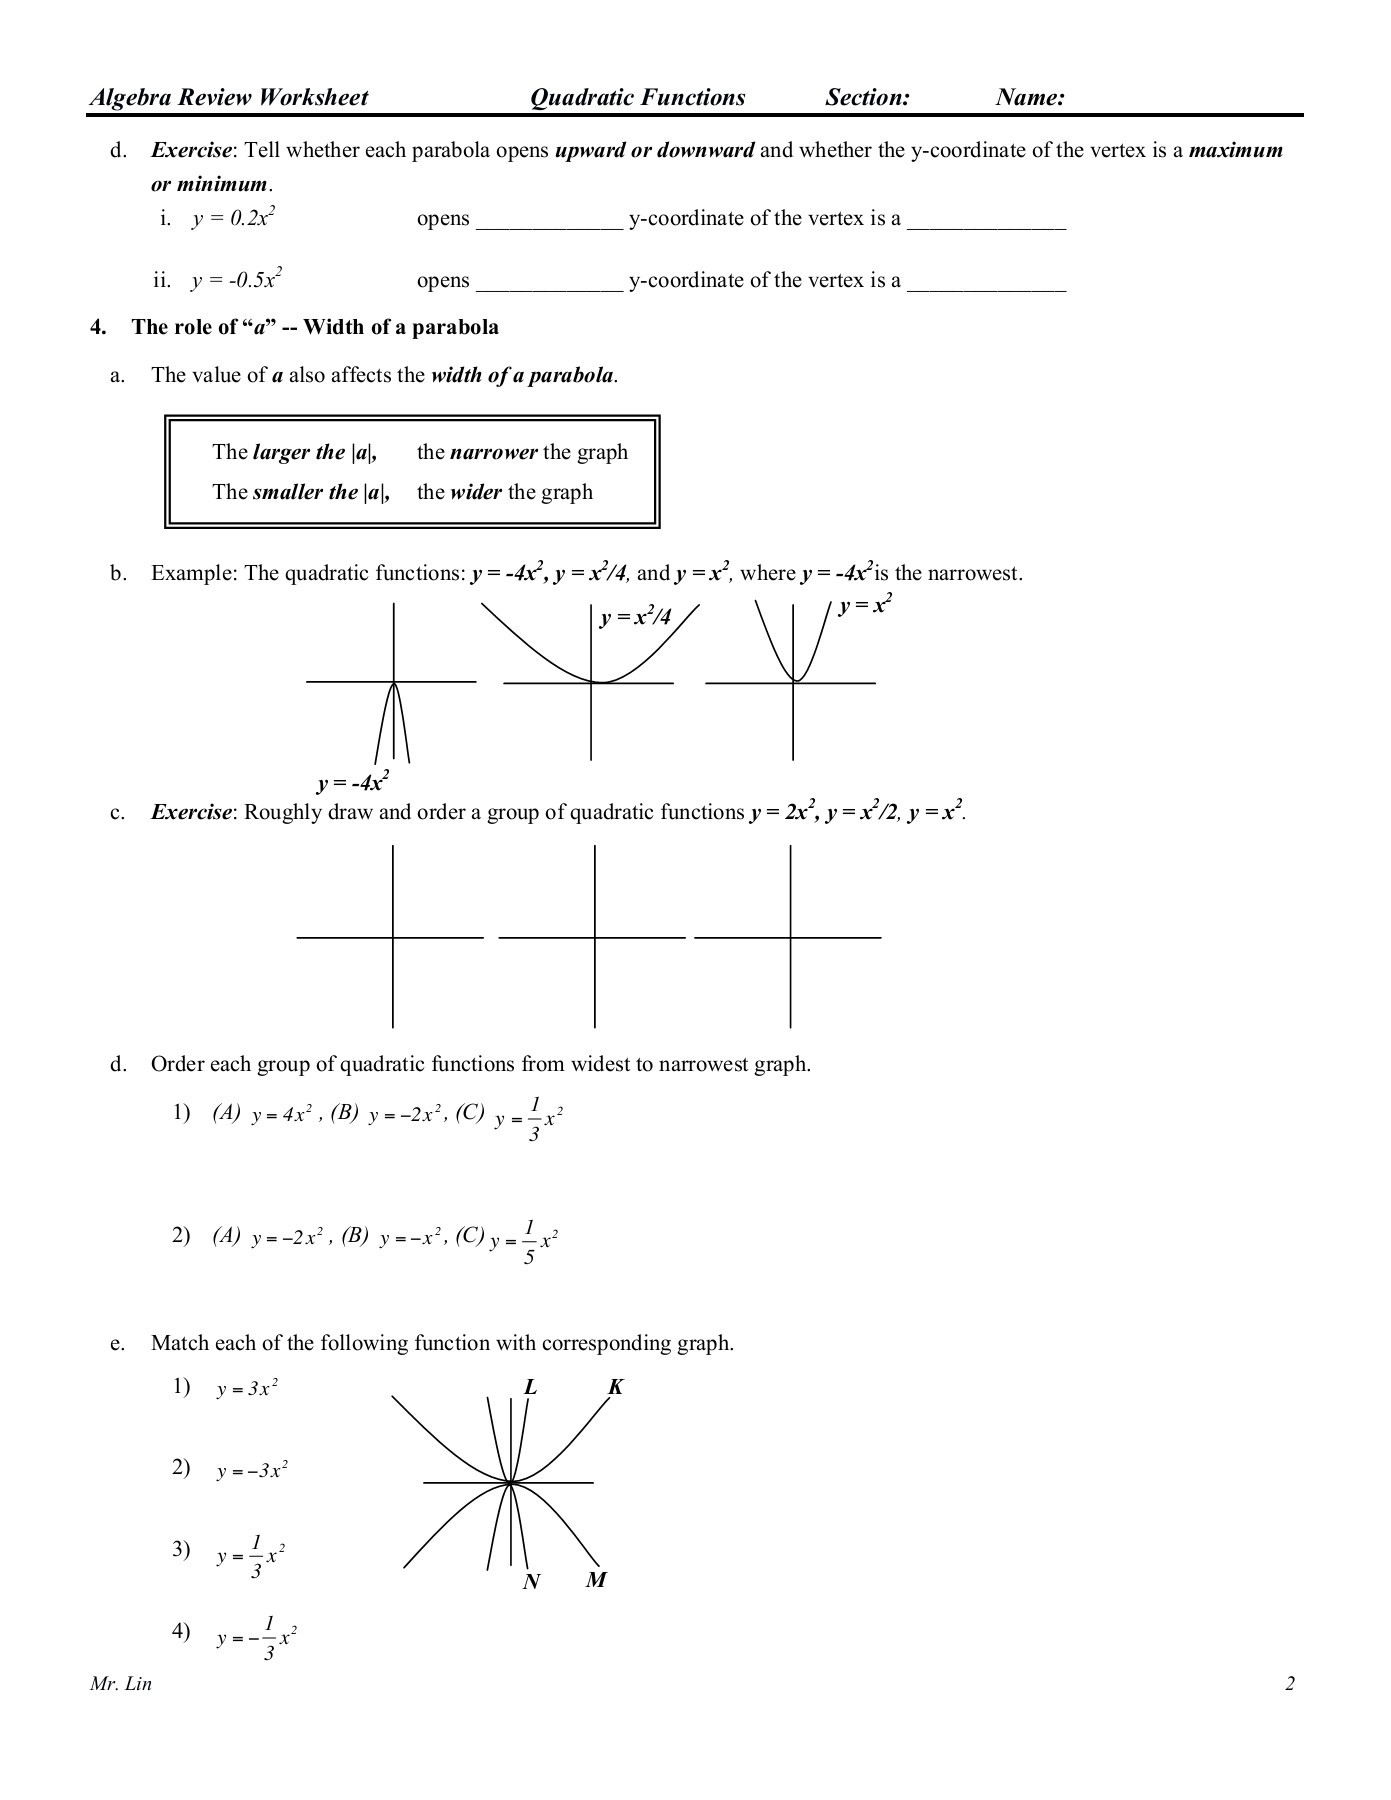 Algebra 1 Functions Worksheet Algebra Worksheet 09 Qudratic Functions Pages 1 5 Text